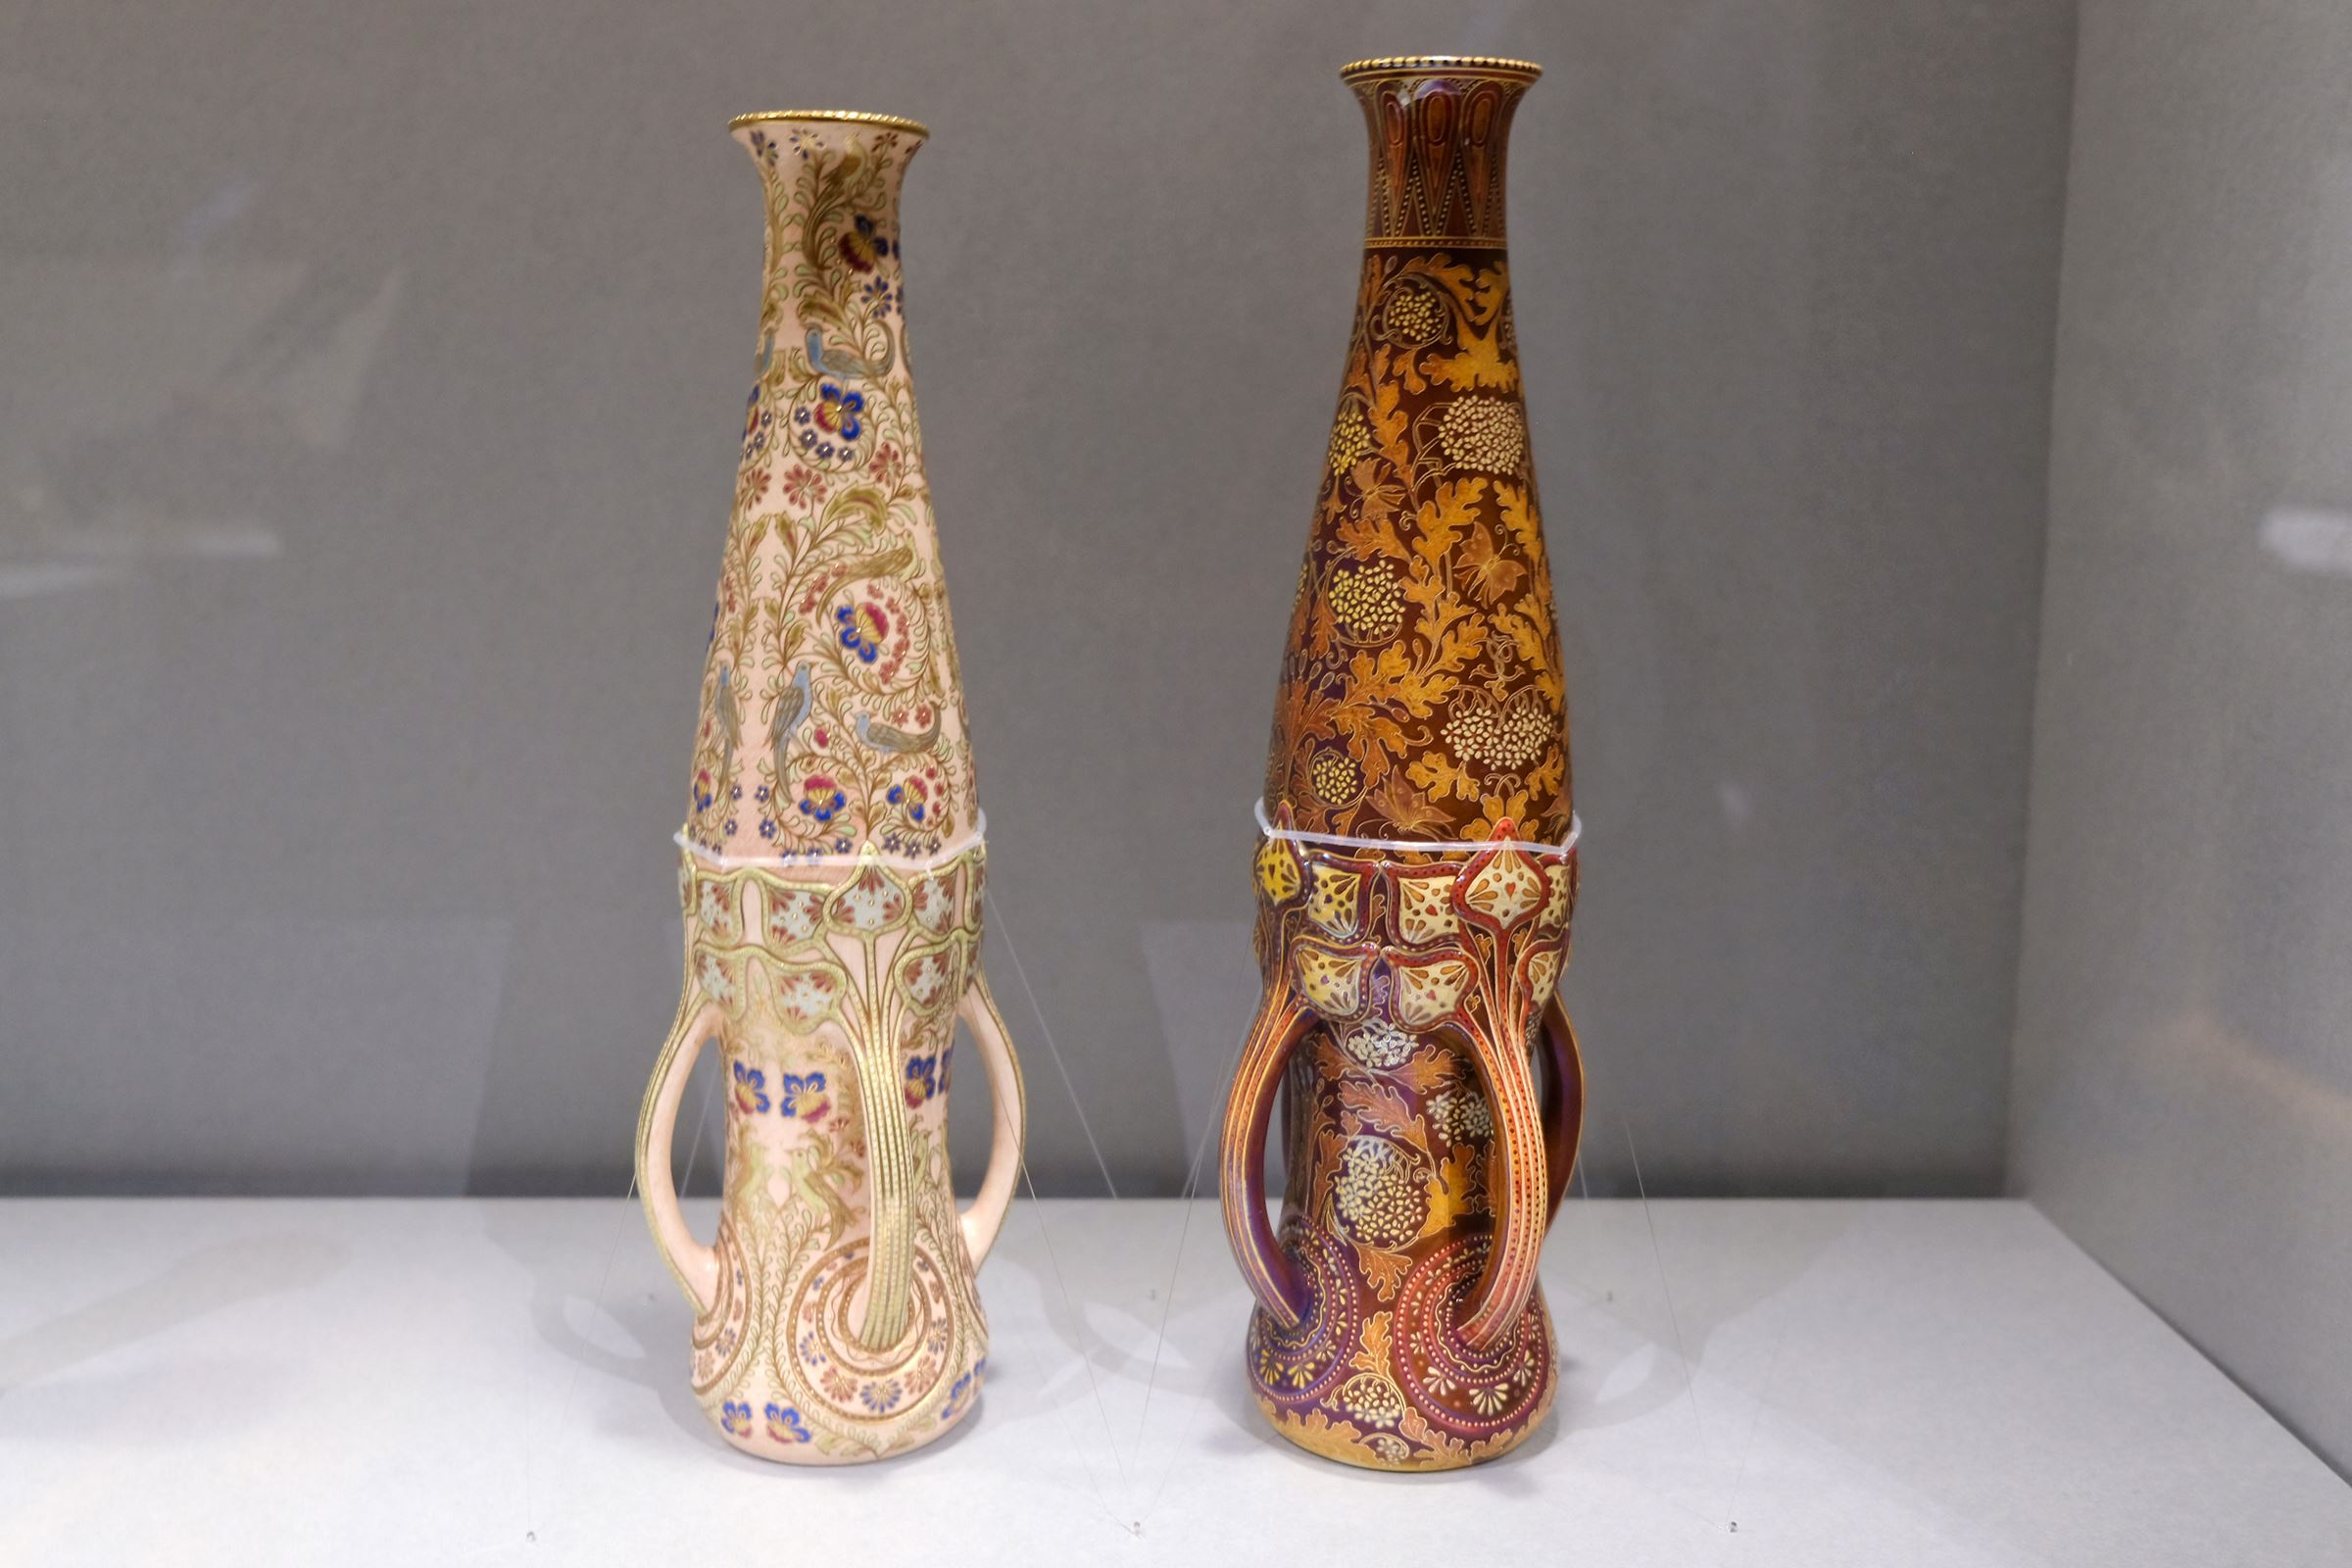 （2点とも）ジョルナイ陶磁器製造所 成形デザイン：シャーンドル・アパーティ・アブト《花瓶 右:日本趣味文様花器 左:ハンガリー民芸文様花器》1903年